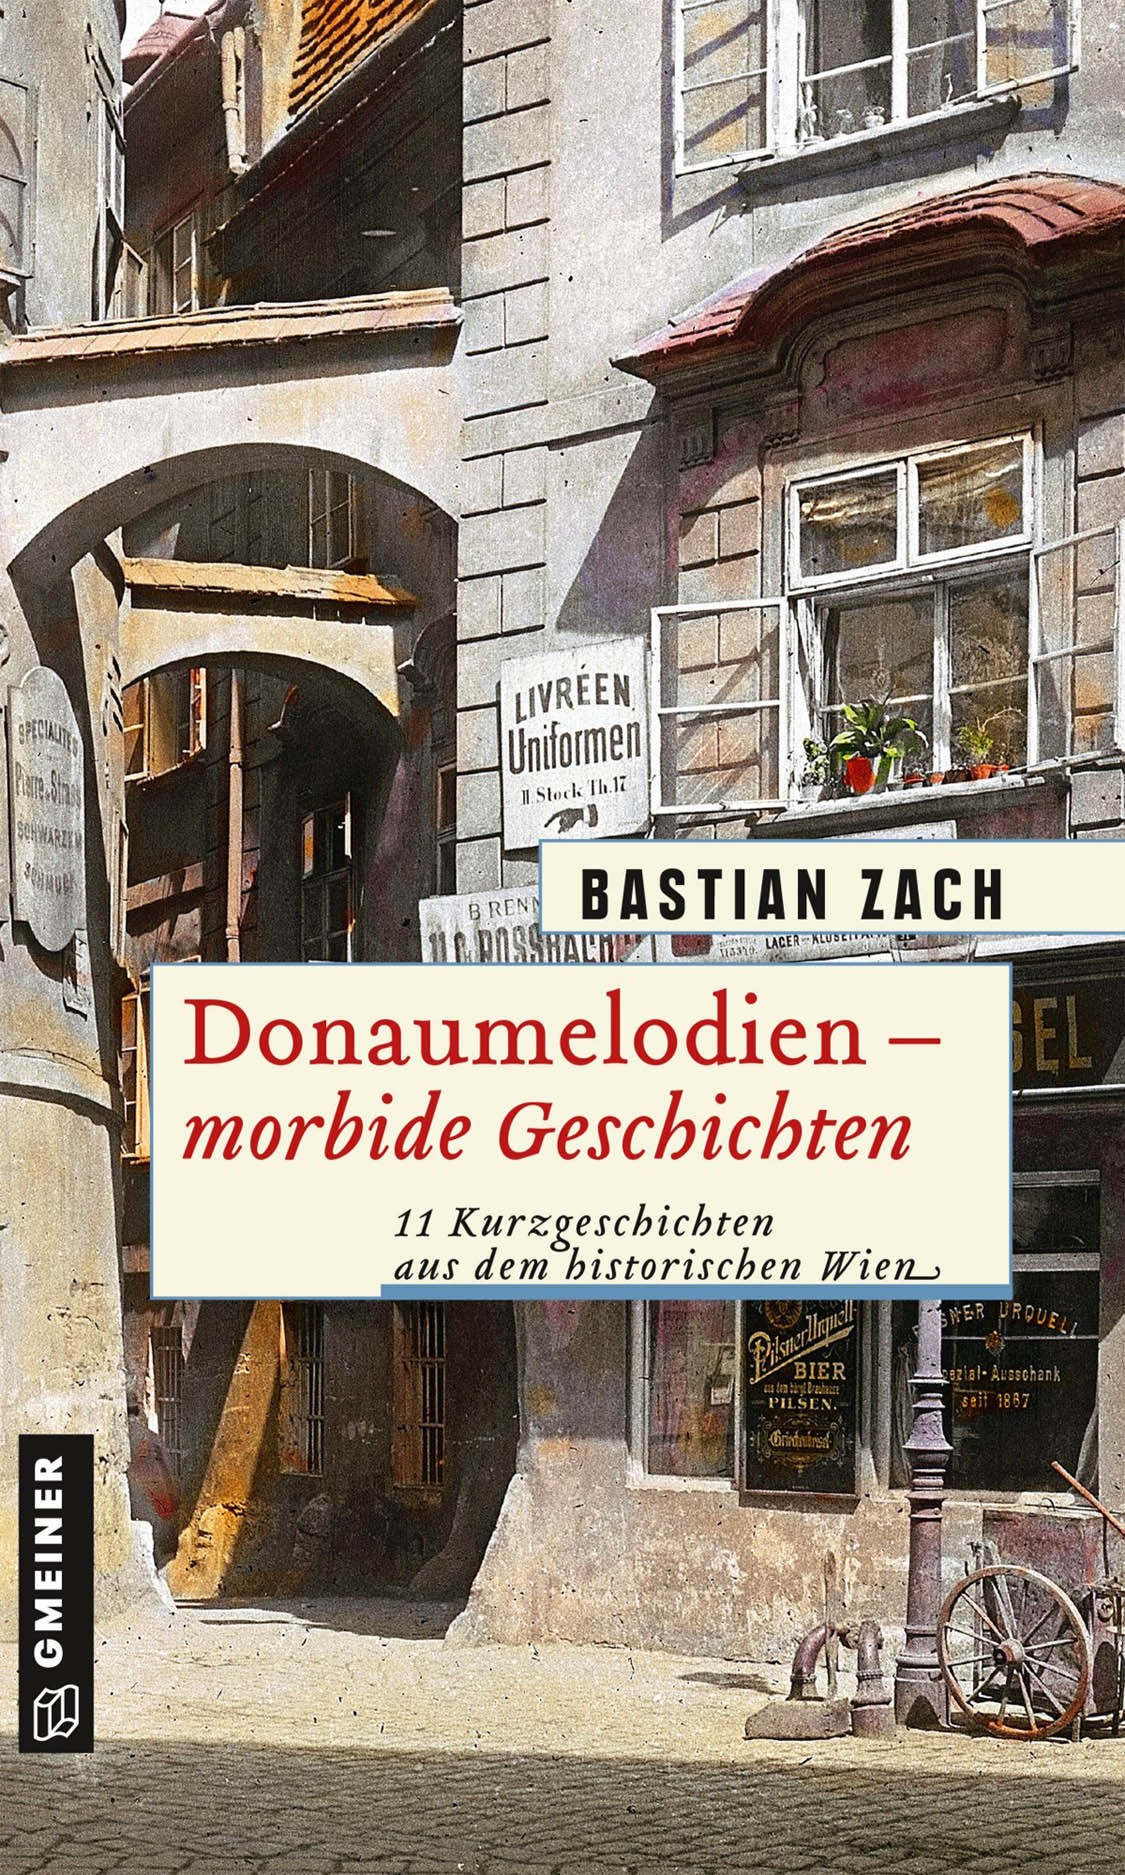 Bastian Zach– Donaumelodien